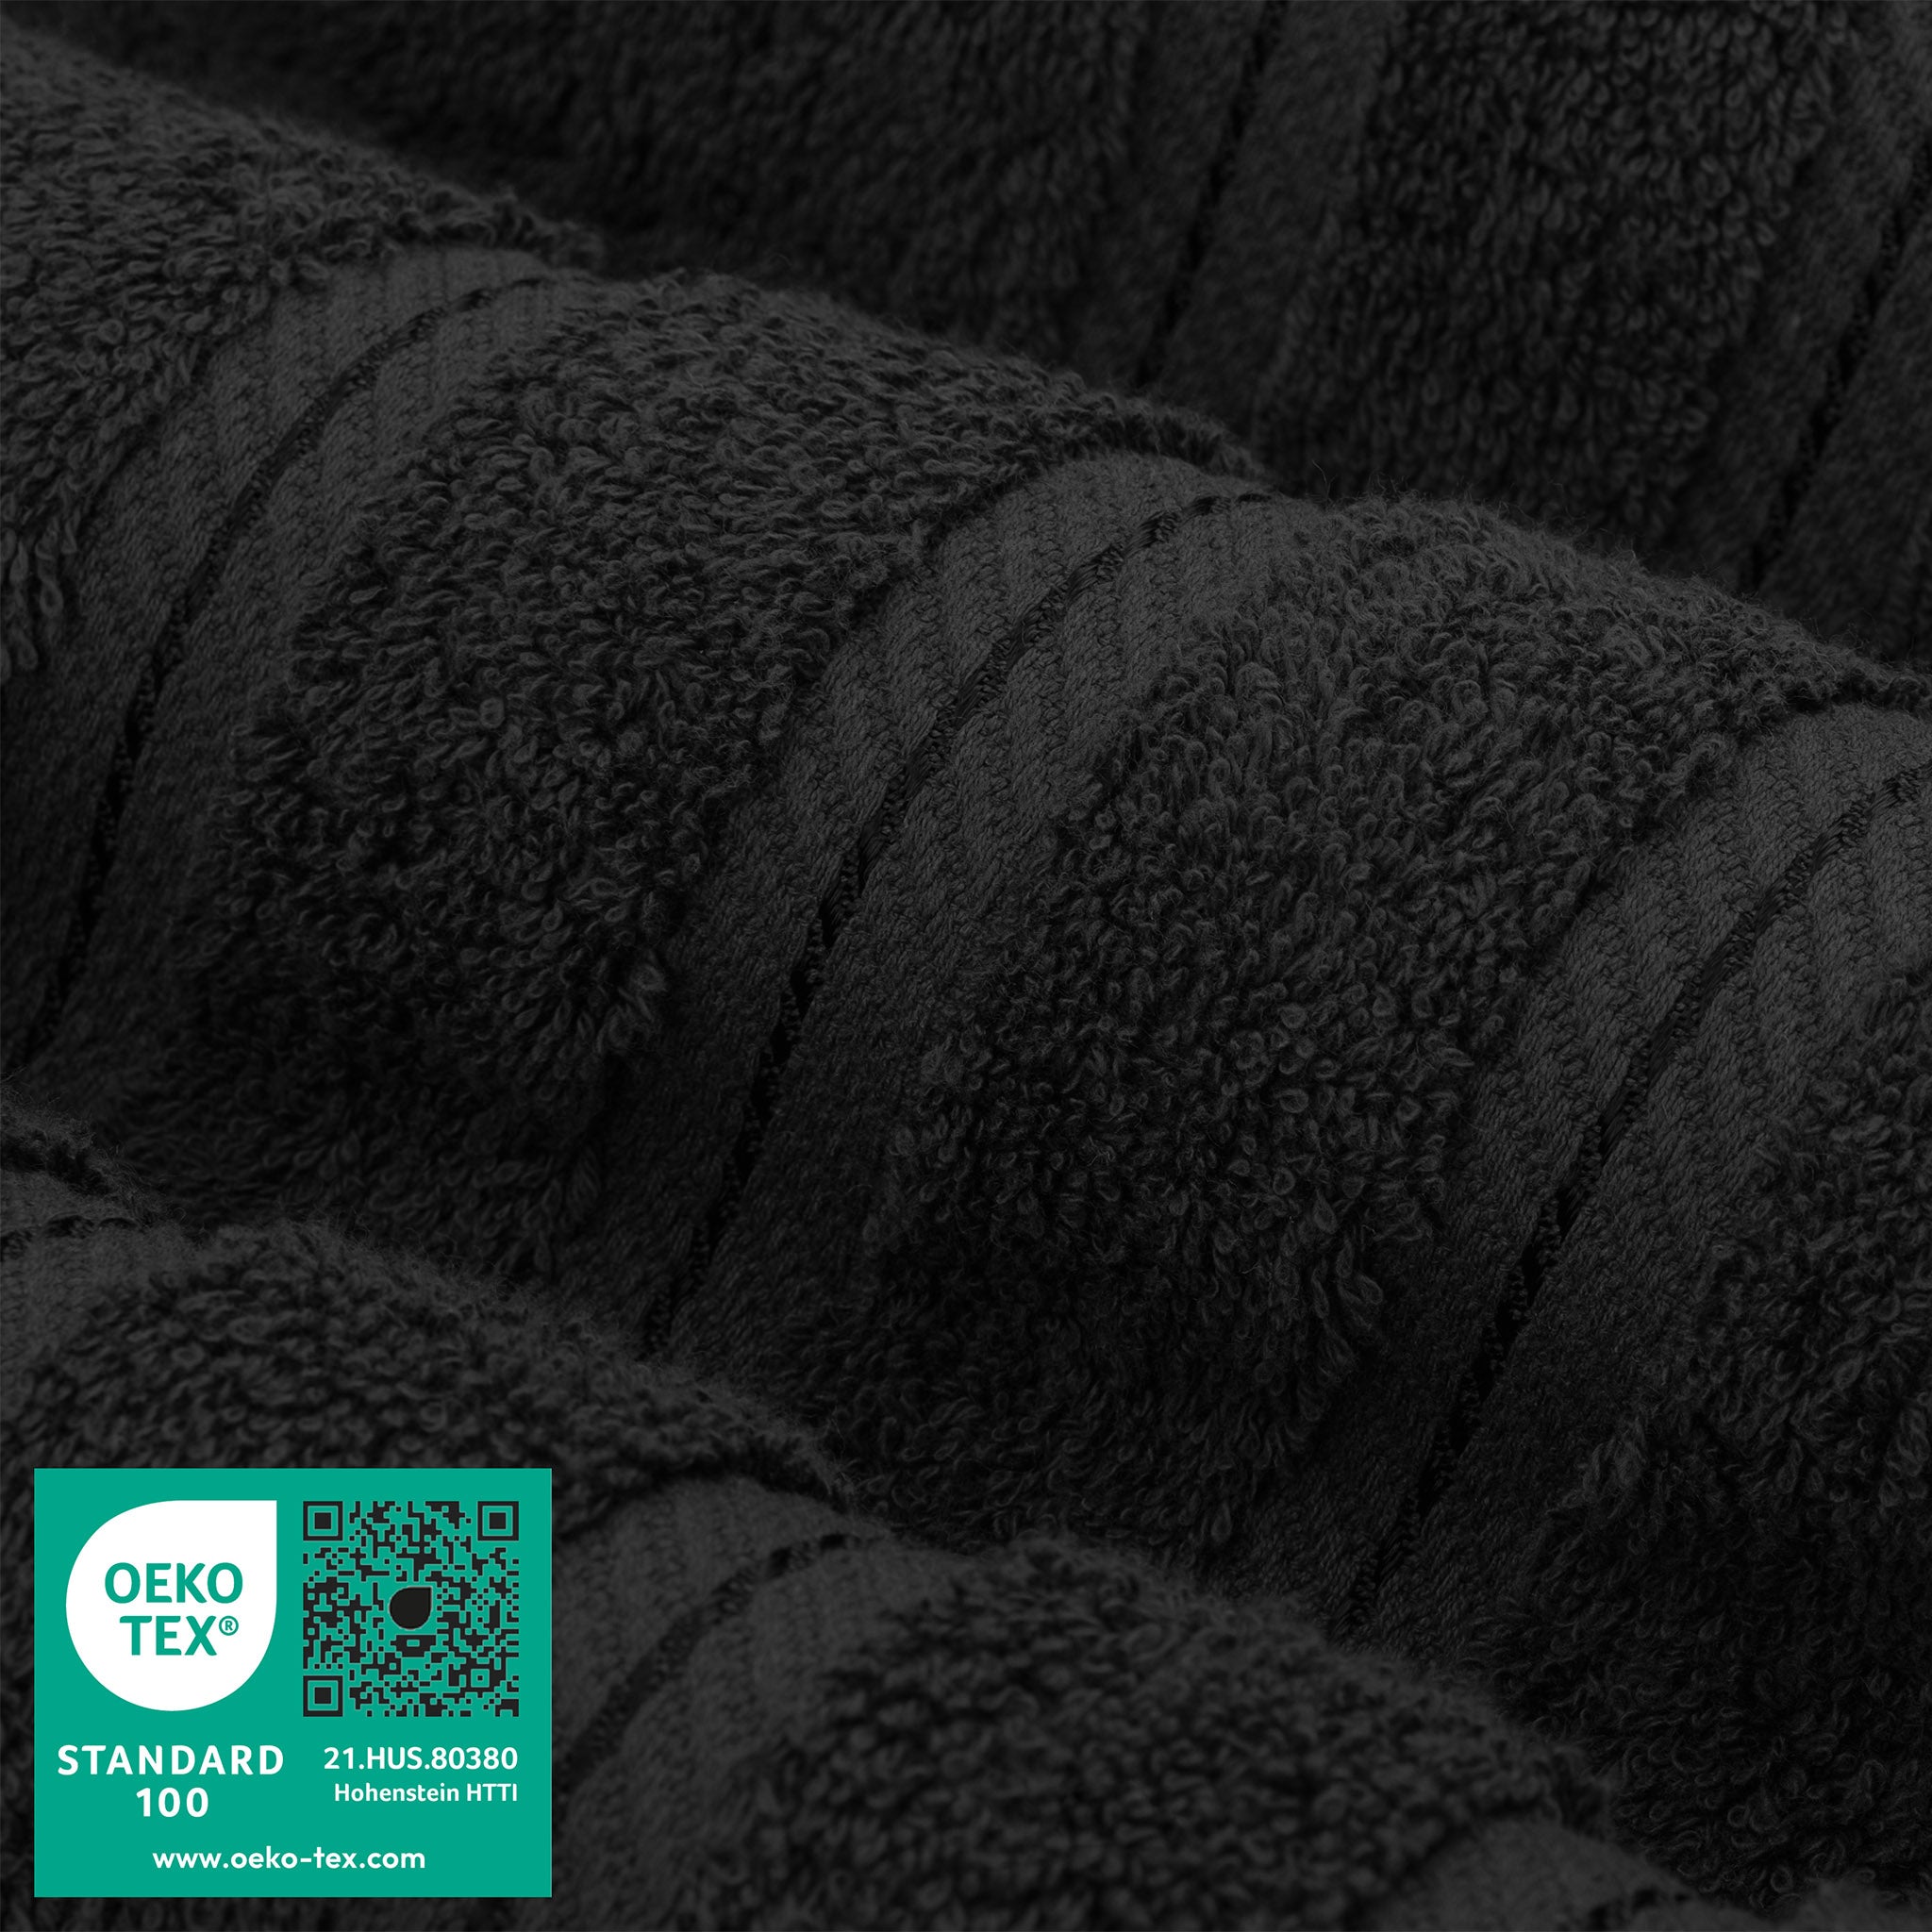 American Soft Linen 100% Turkish Cotton 6 Piece Towel Set Wholesale black-3